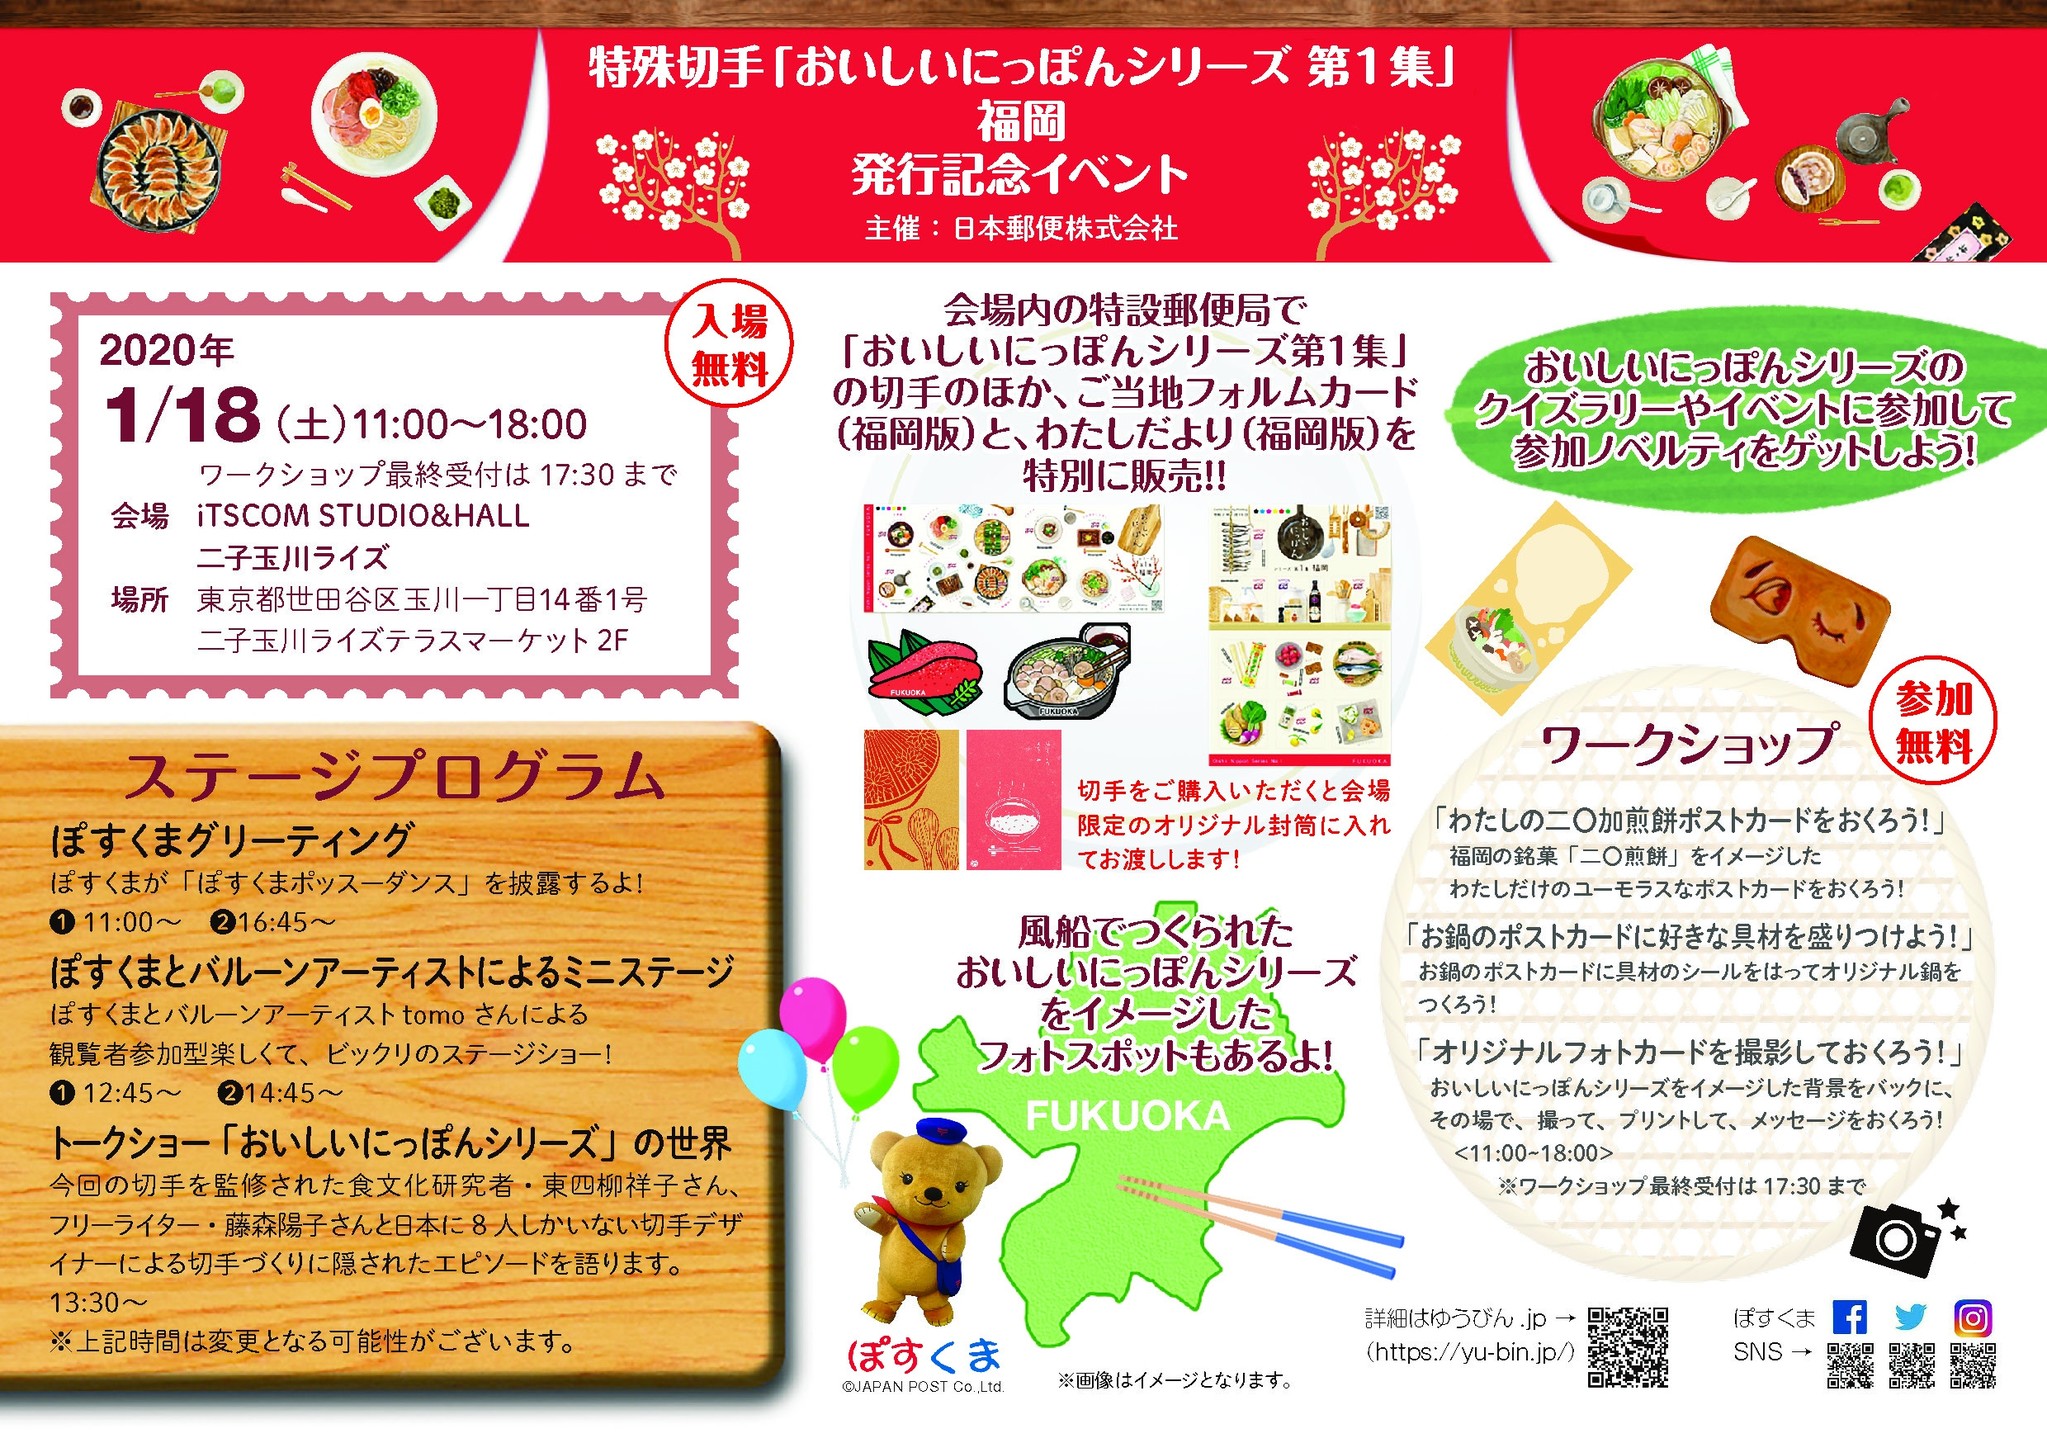 日本の食をテーマにした 切手 おいしいにっぽんシリーズ第1集 発行記念イベントを開催します 日本郵便株式会社のプレスリリース